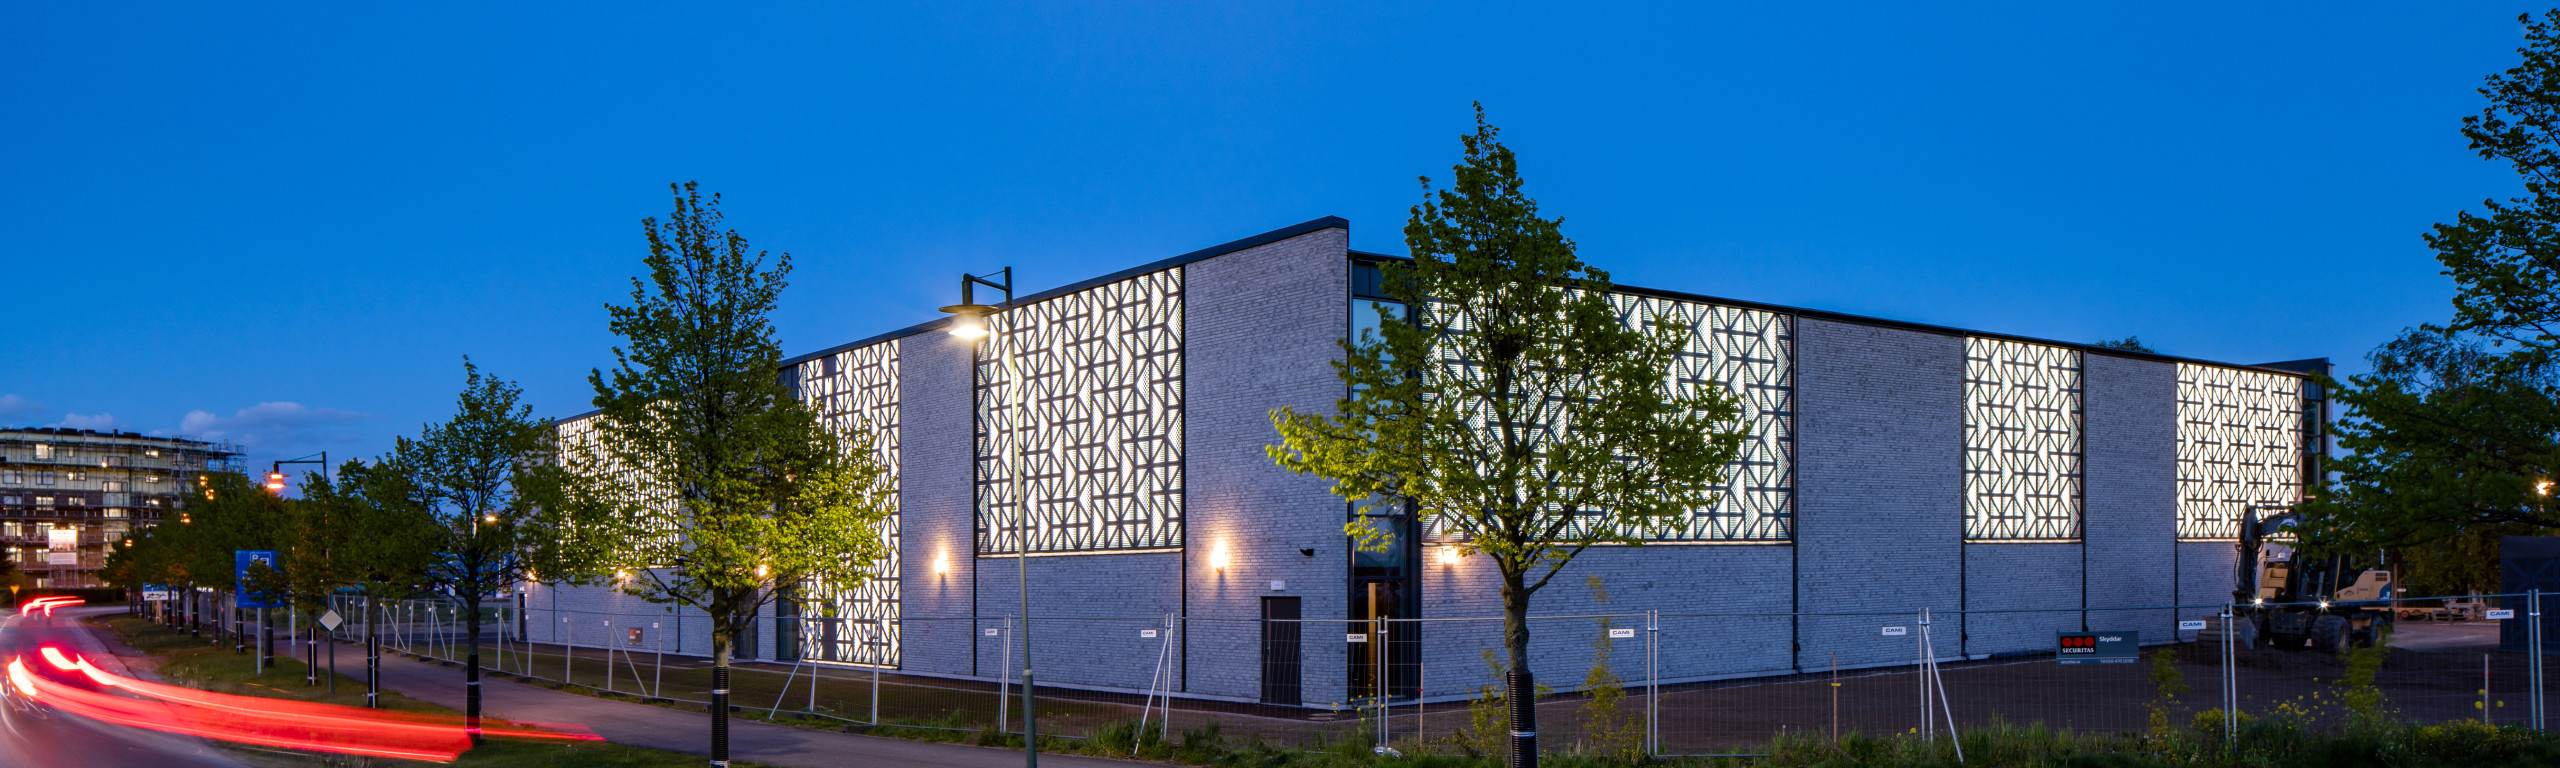 Mariahallen i Helsingborg, fotograferat av arkitekturfotograf Mattias Hamrén.